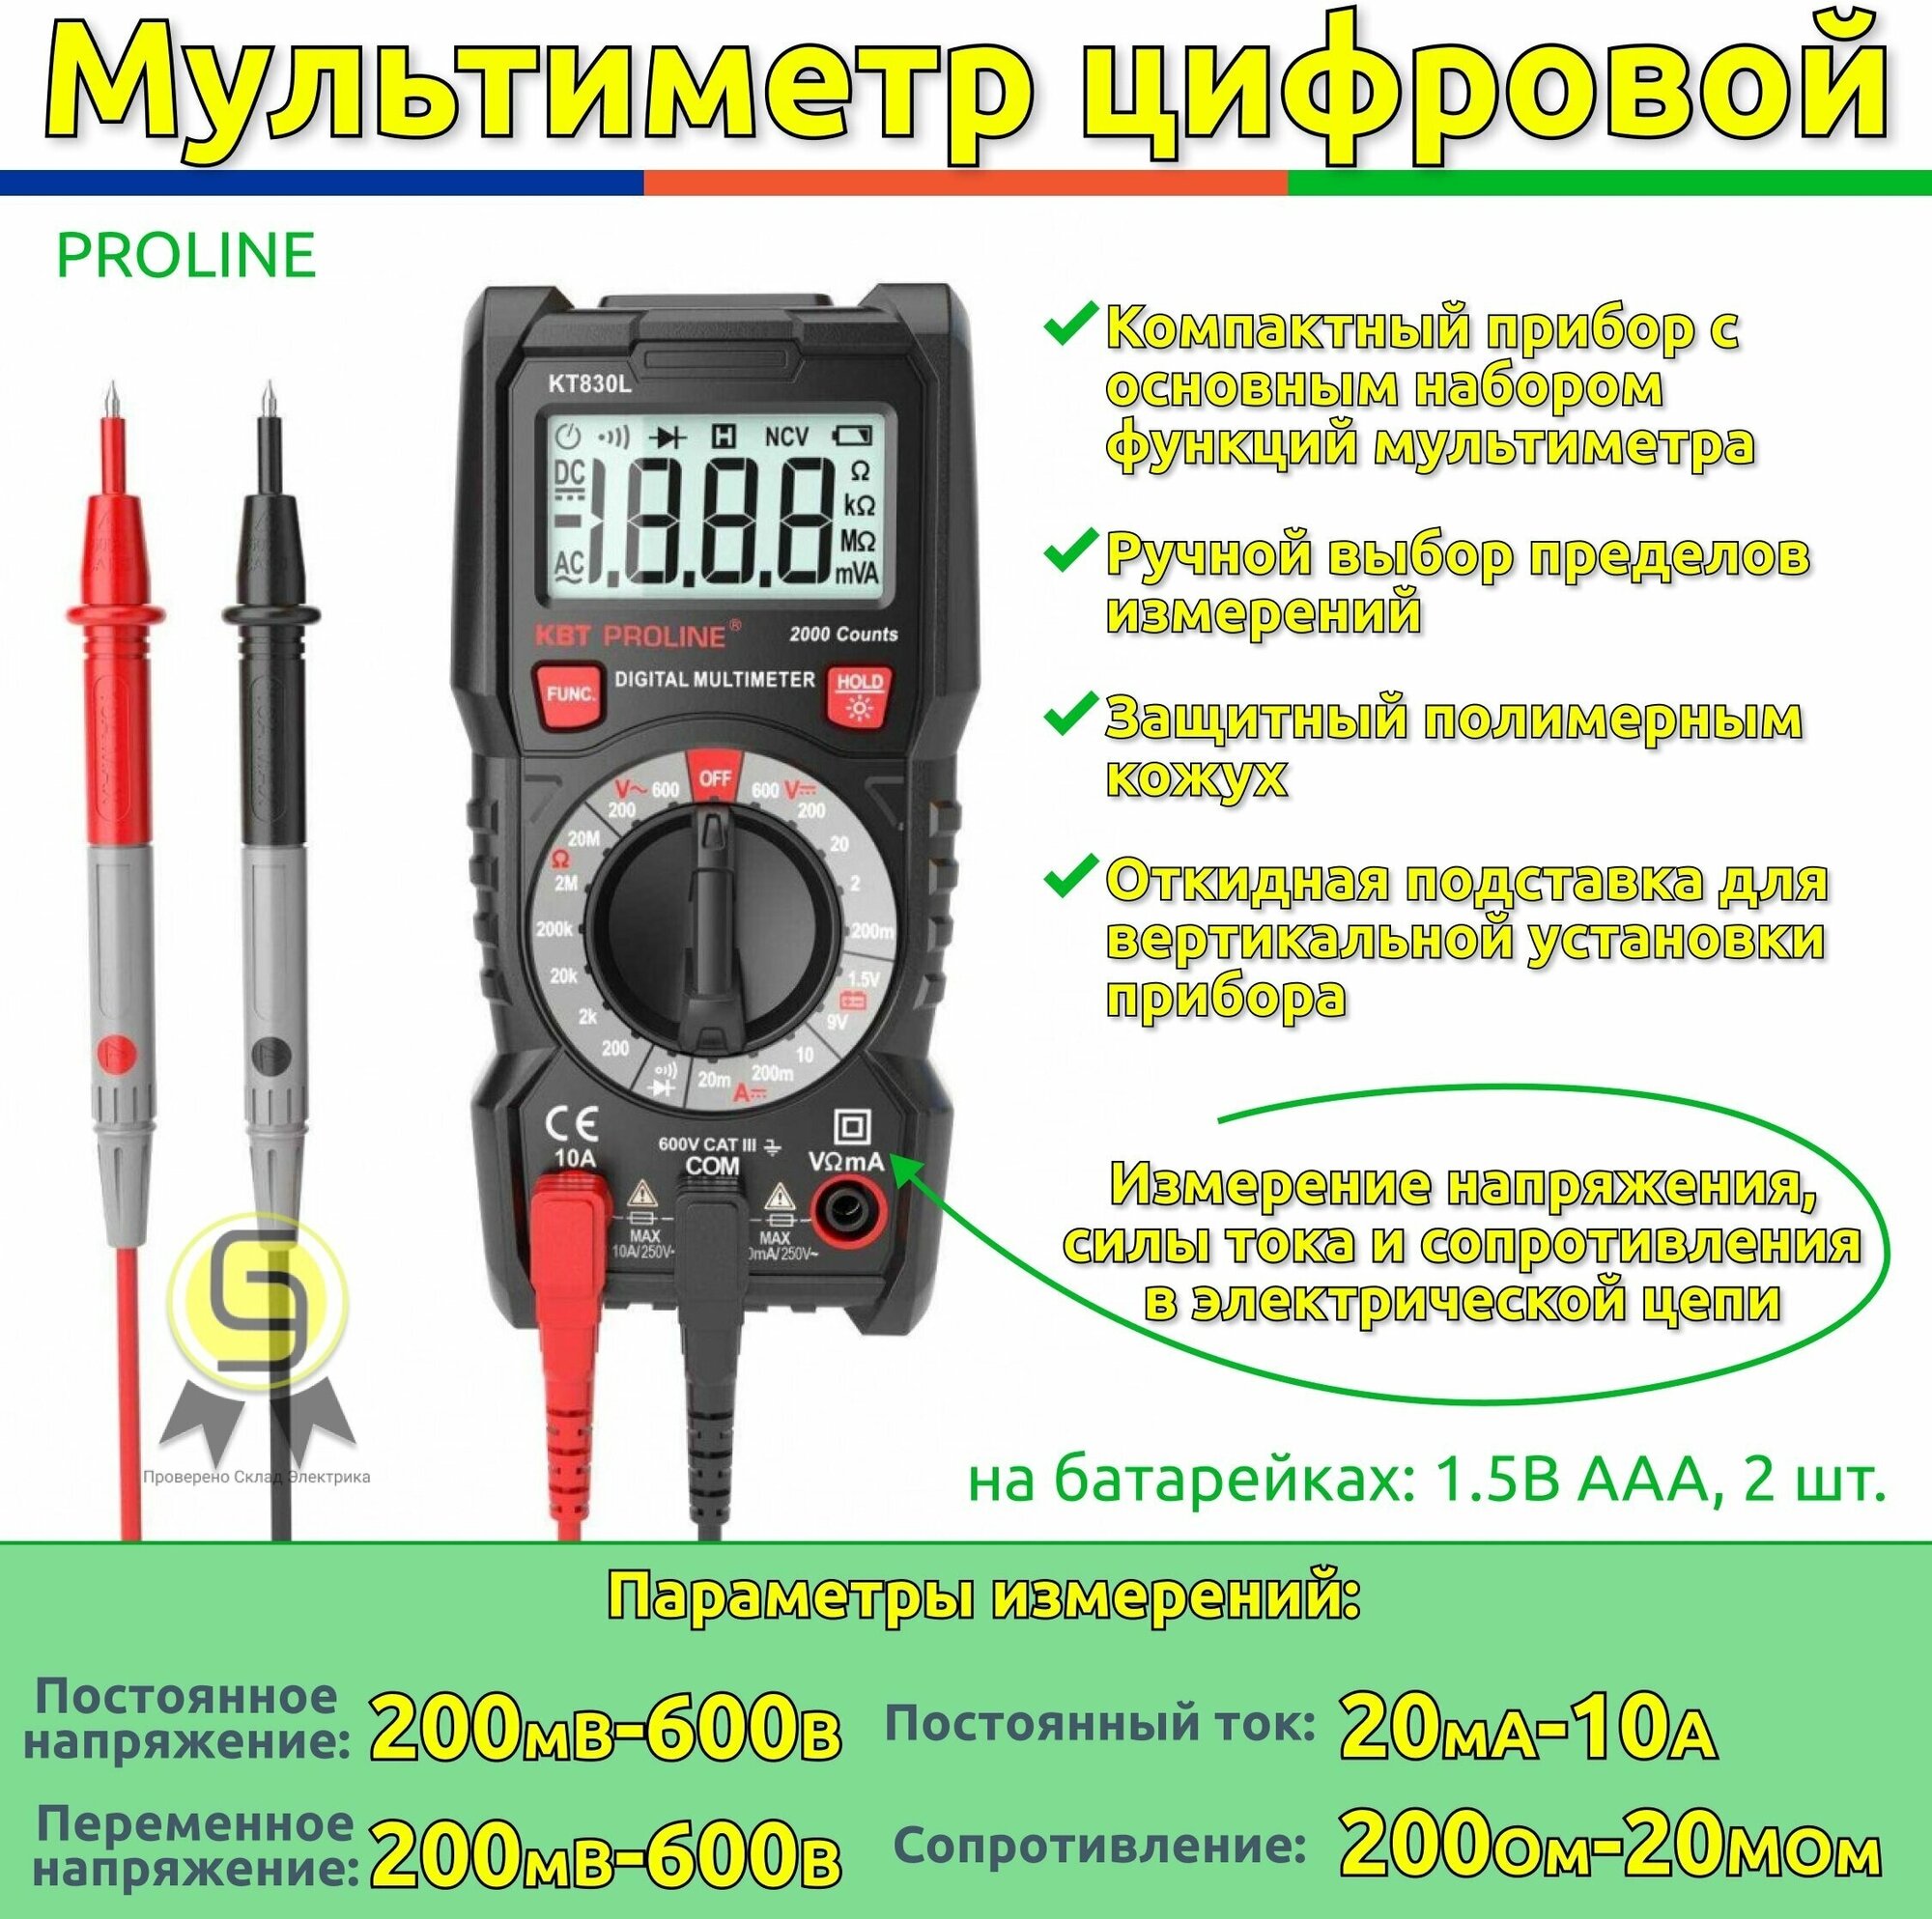 Мультиметр цифровой КВТ KT830L (комплект 4шт)